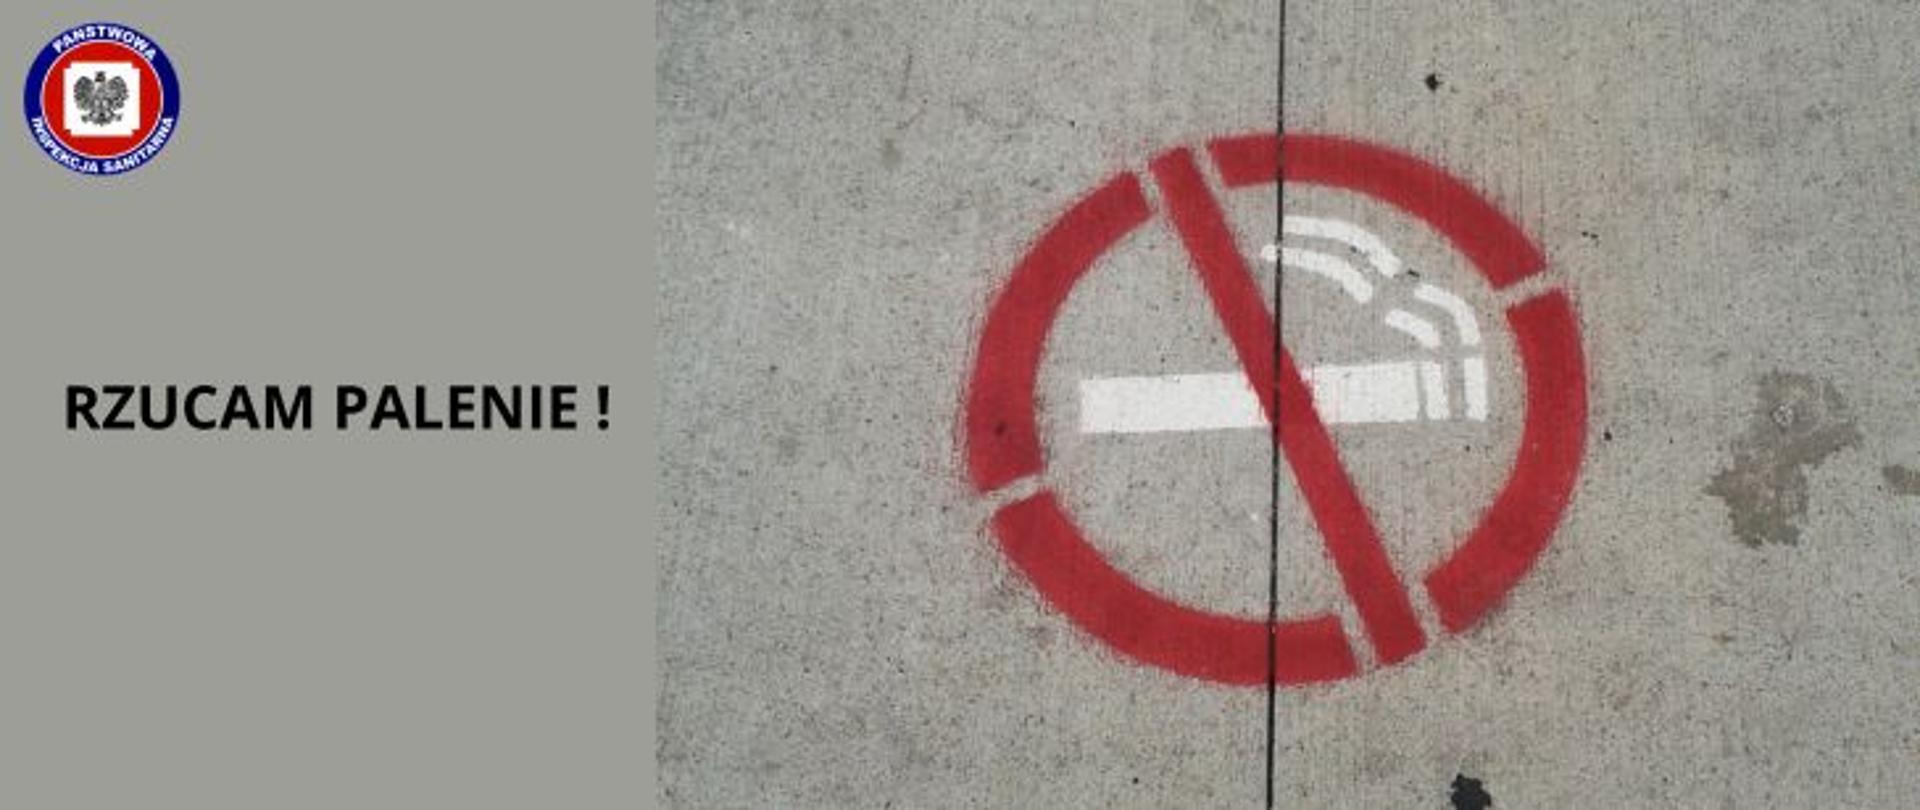 Grafika w szarej tonacji, po prawej strony na betonowym tle czerwony znak zakazu palenia, z lewej strony ciemny napis Rzucam palenie! a w lewym górnym rogu logo Państwowej Inspekcji Sanitarnej.